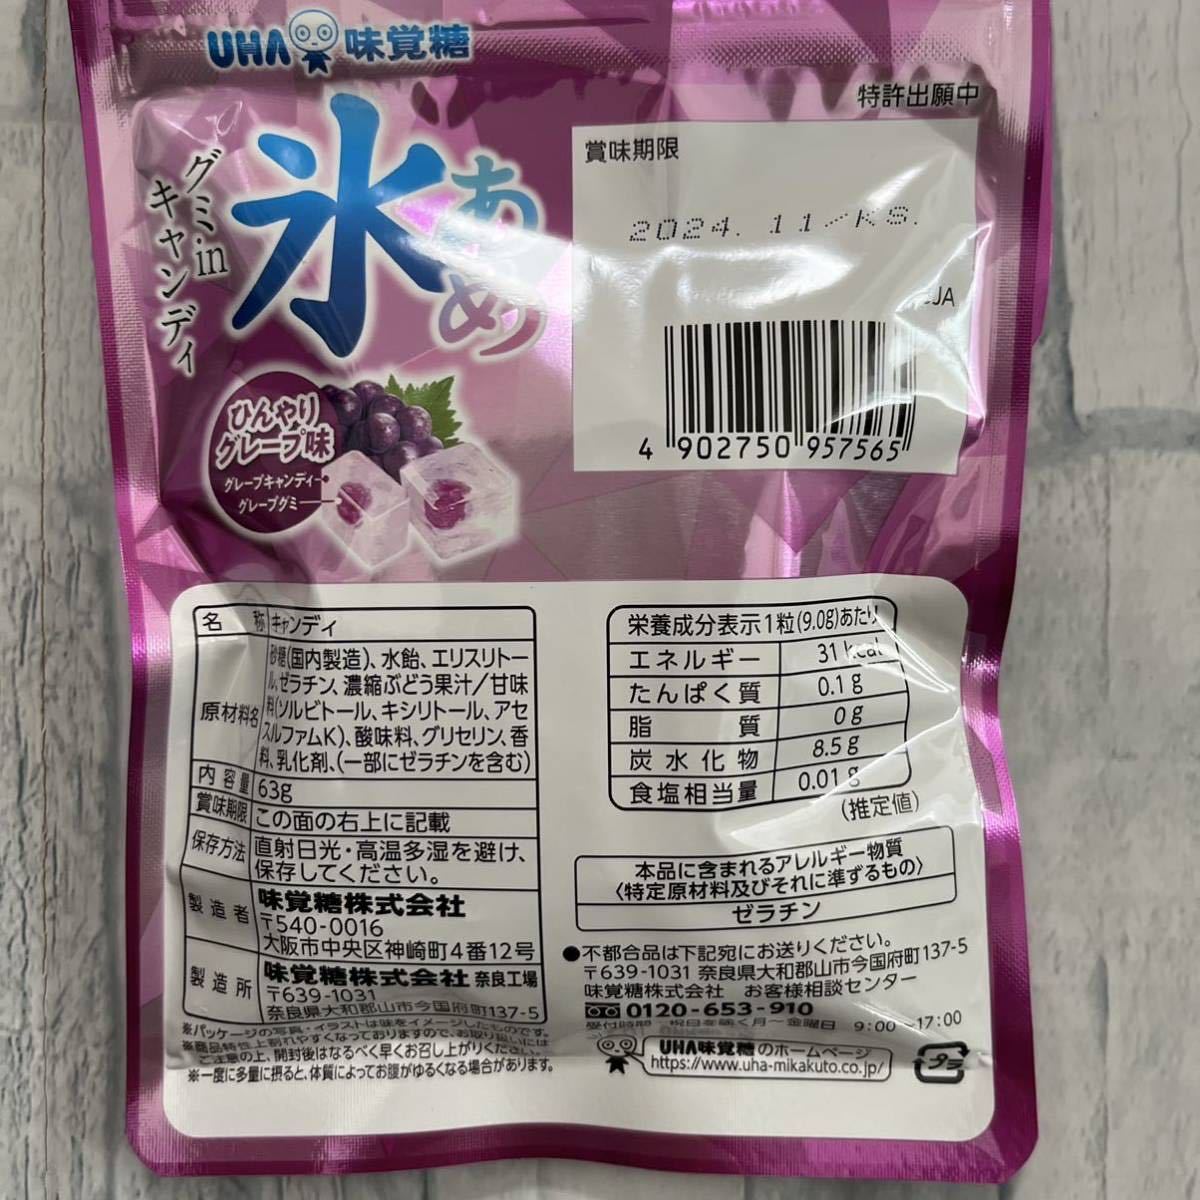 UHA味覚糖 氷あめ グミinキャンディ ひんやりグレープ味 9袋セット